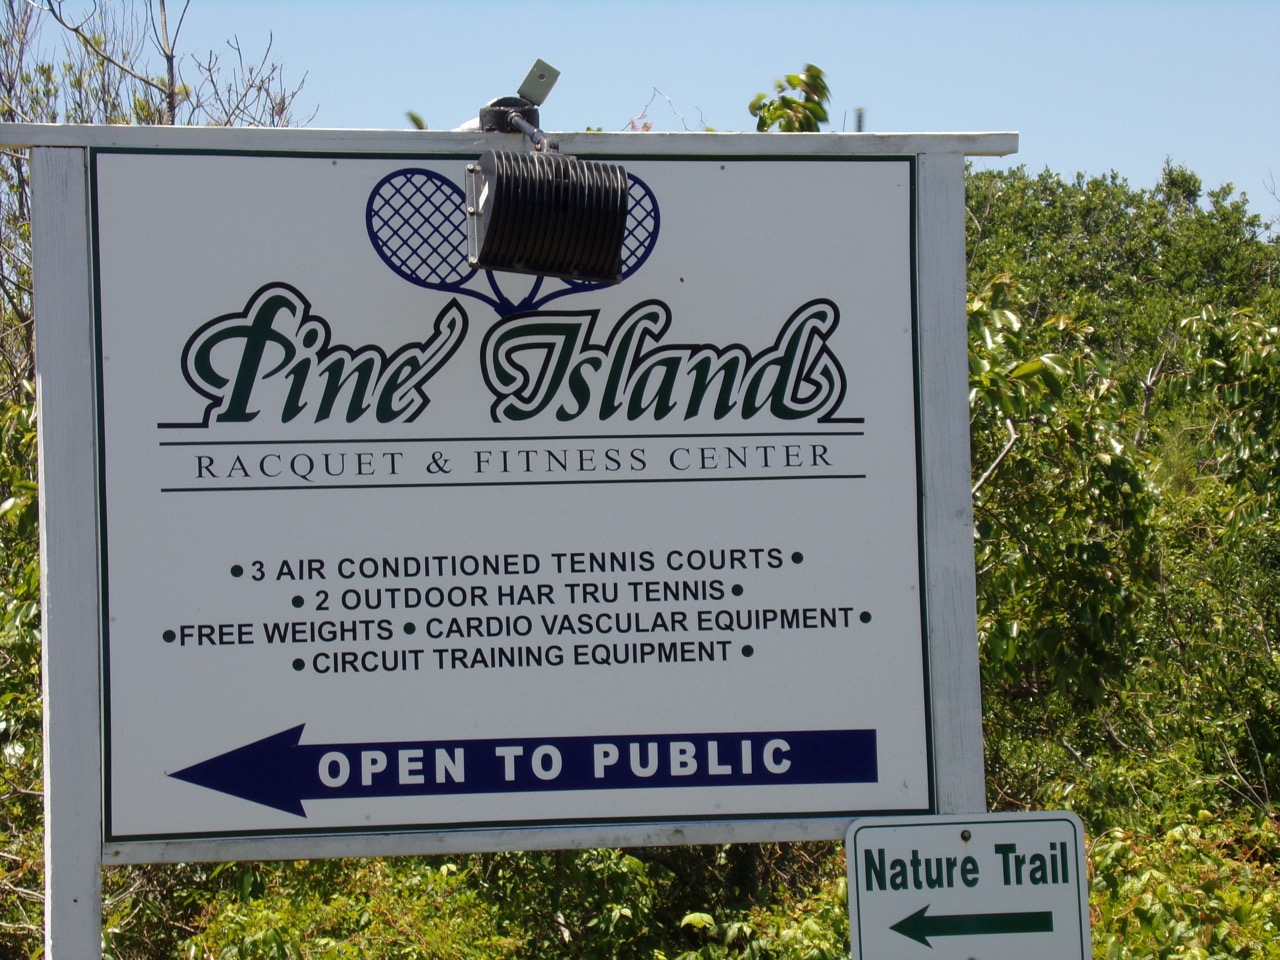 Pine Island Racquet & Fitness Center